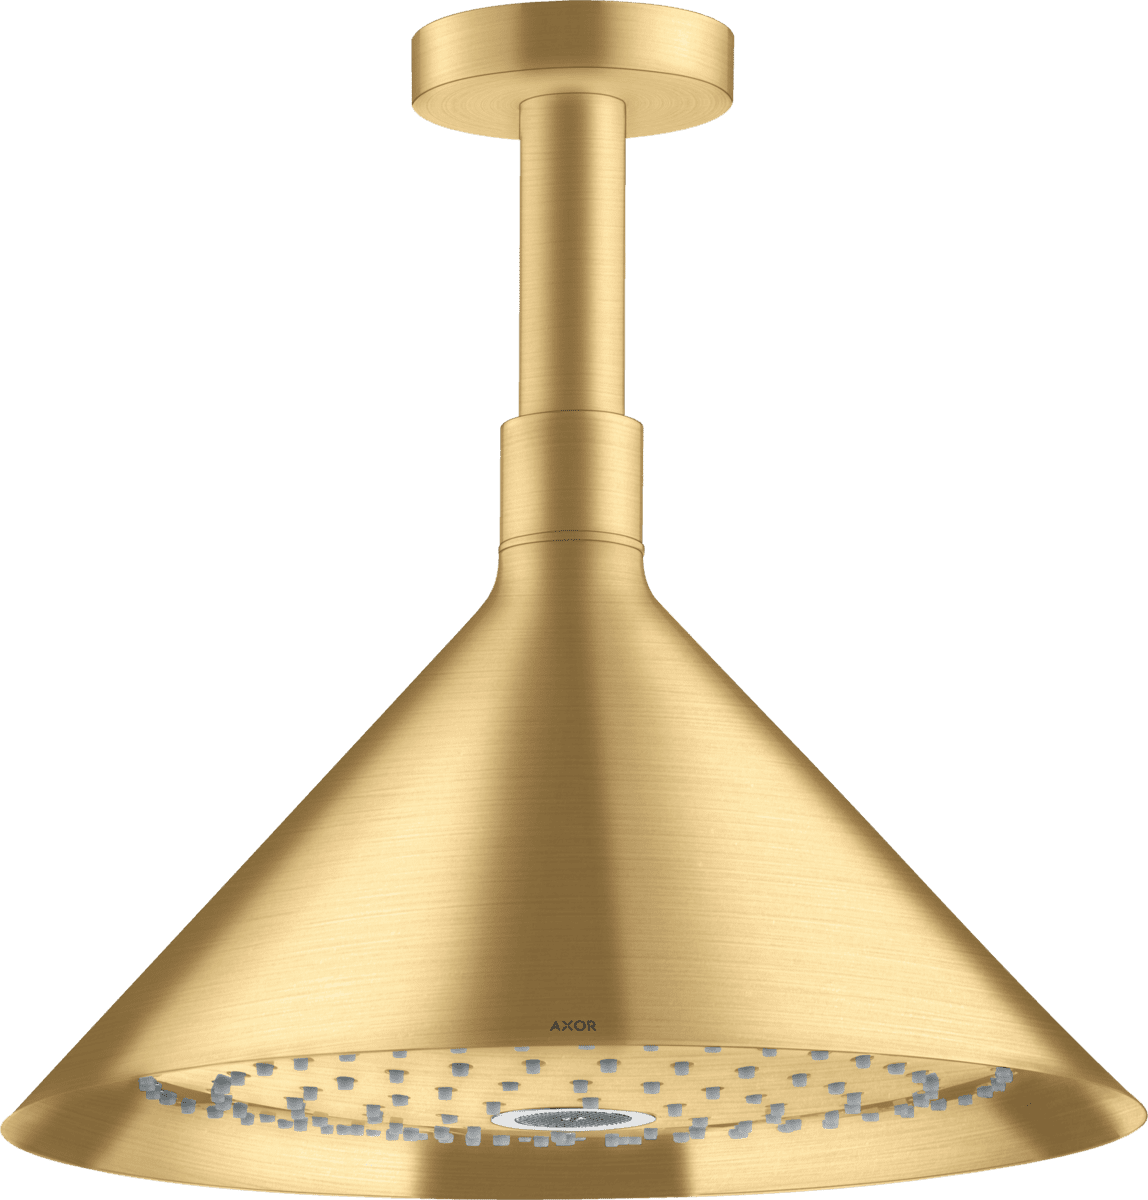 εικόνα του HANSGROHE AXOR Showers/Front Overhead shower 240 2jet with ceiling connector #26022250 - Brushed Gold Optic